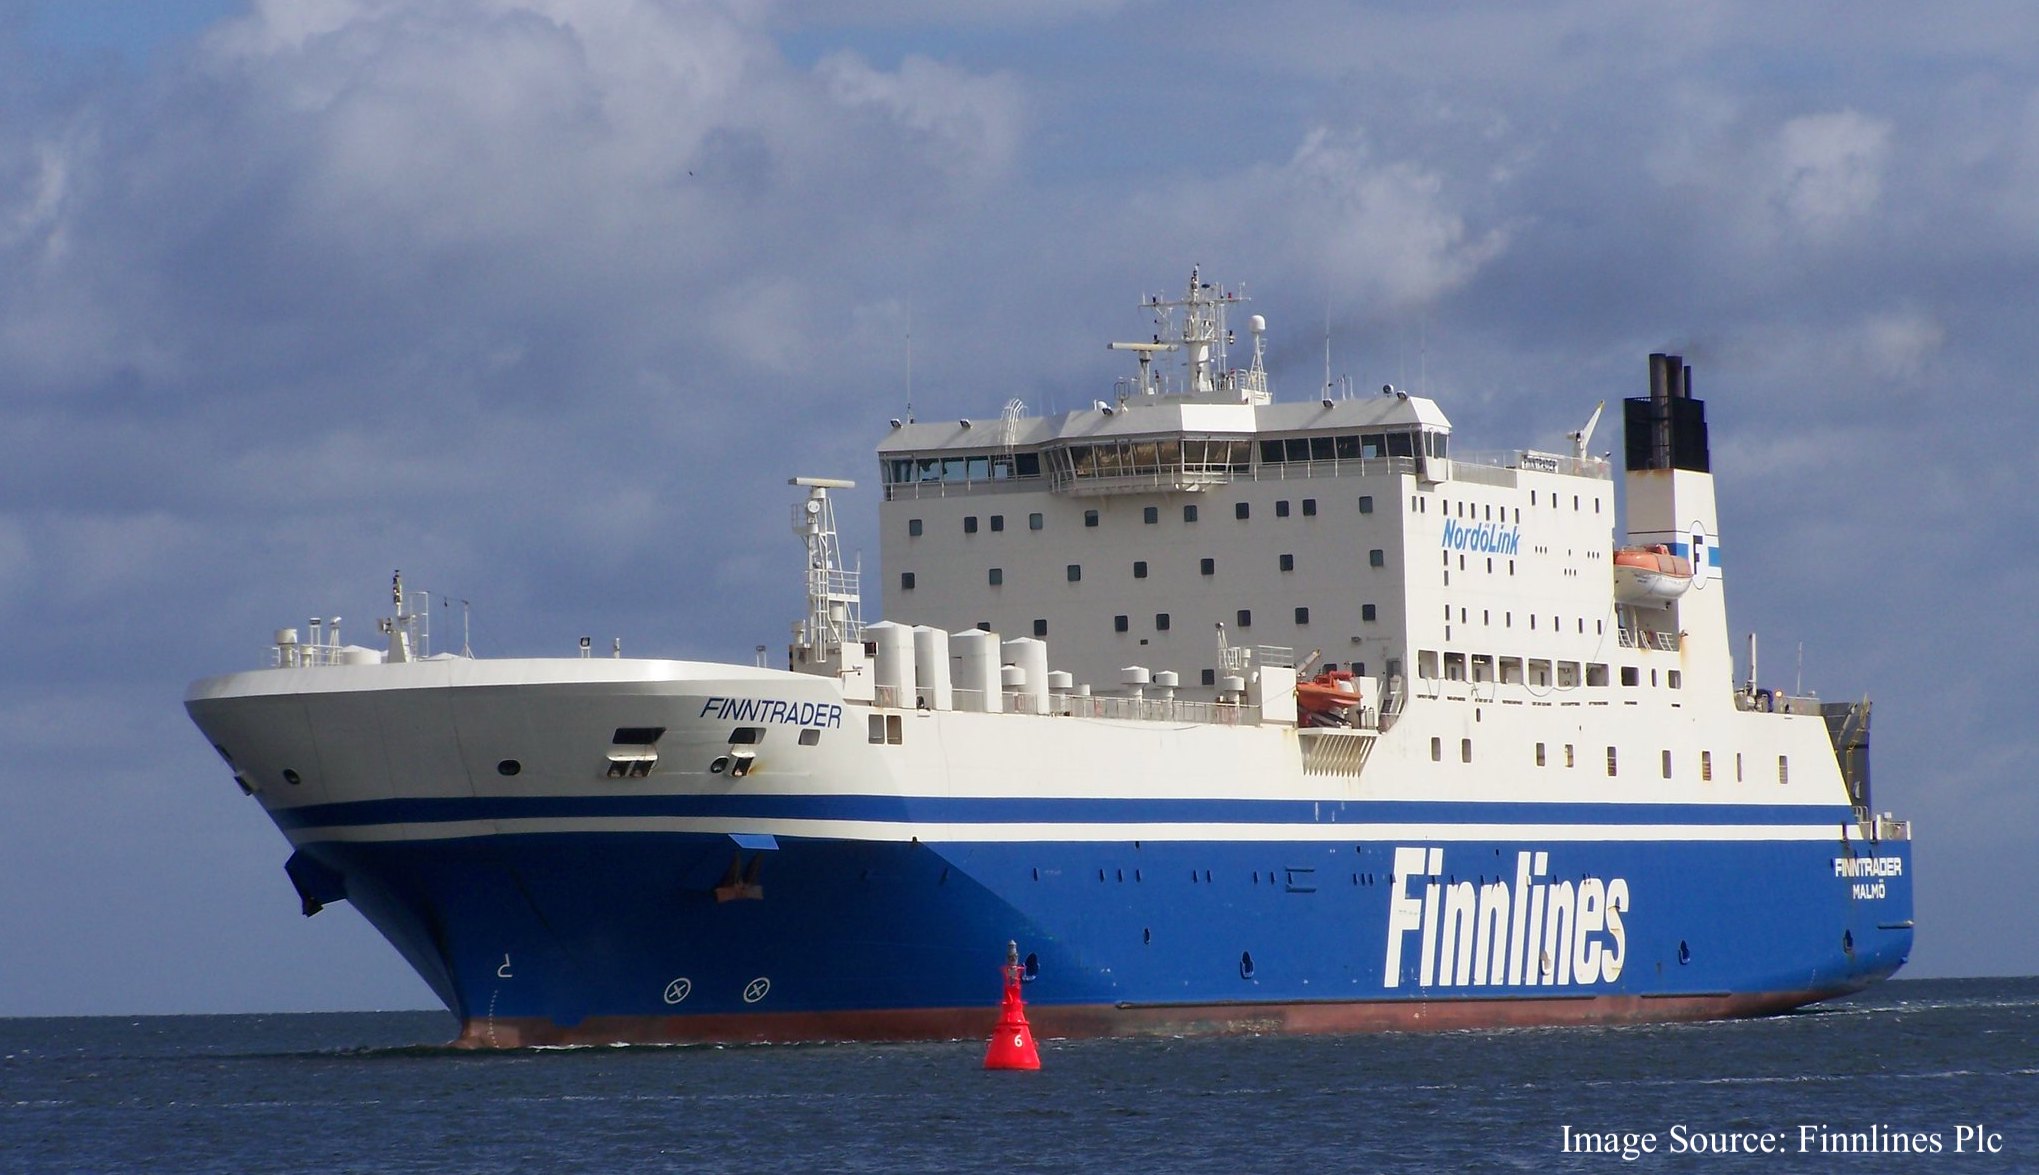 Finnlines - Finntrader जहाज का फोटो